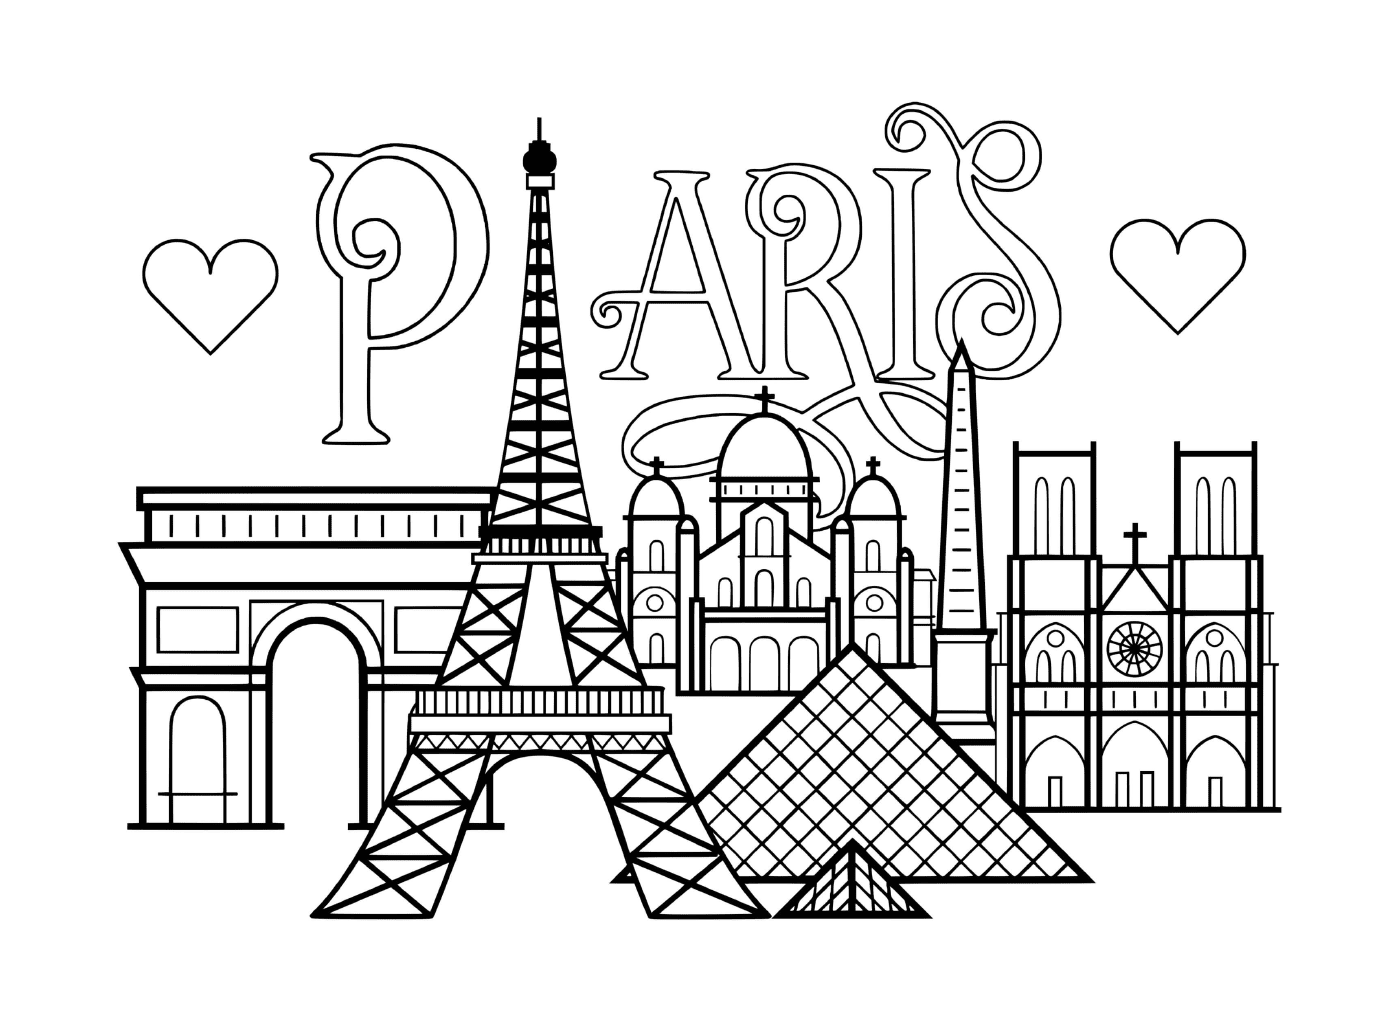  Ciudad de París, monumentos famosos 